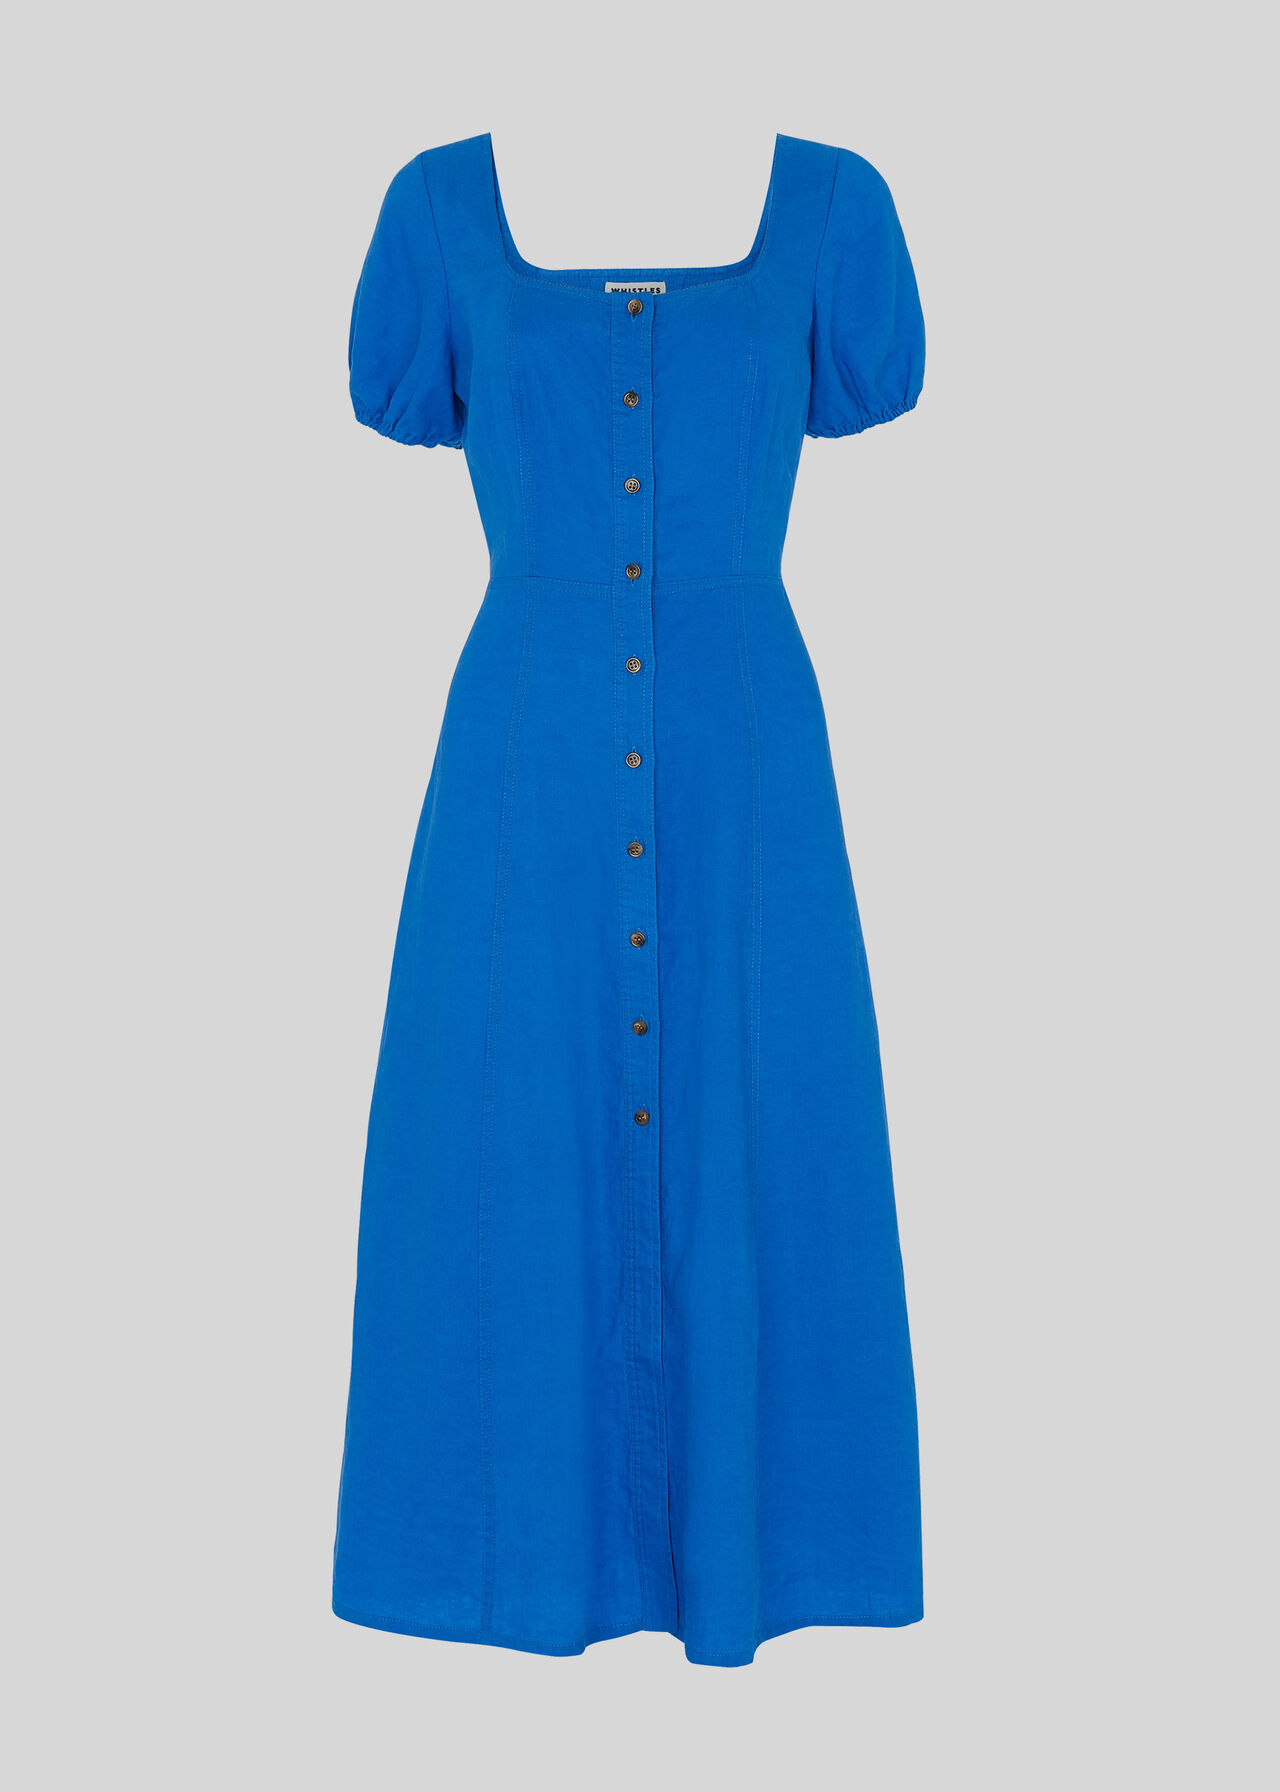 Remi Linen Dress Blue